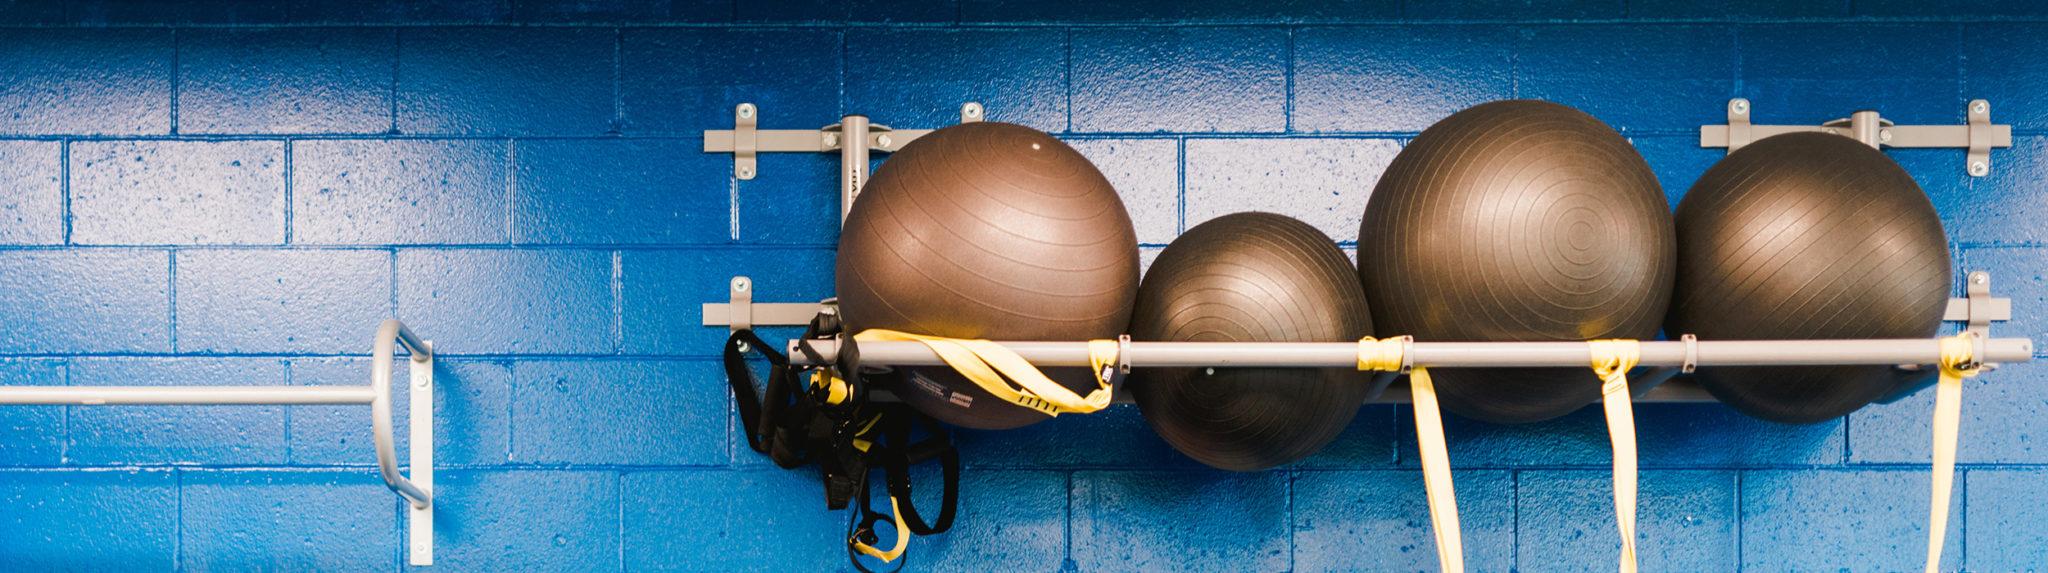 Wellness banner-stability balls